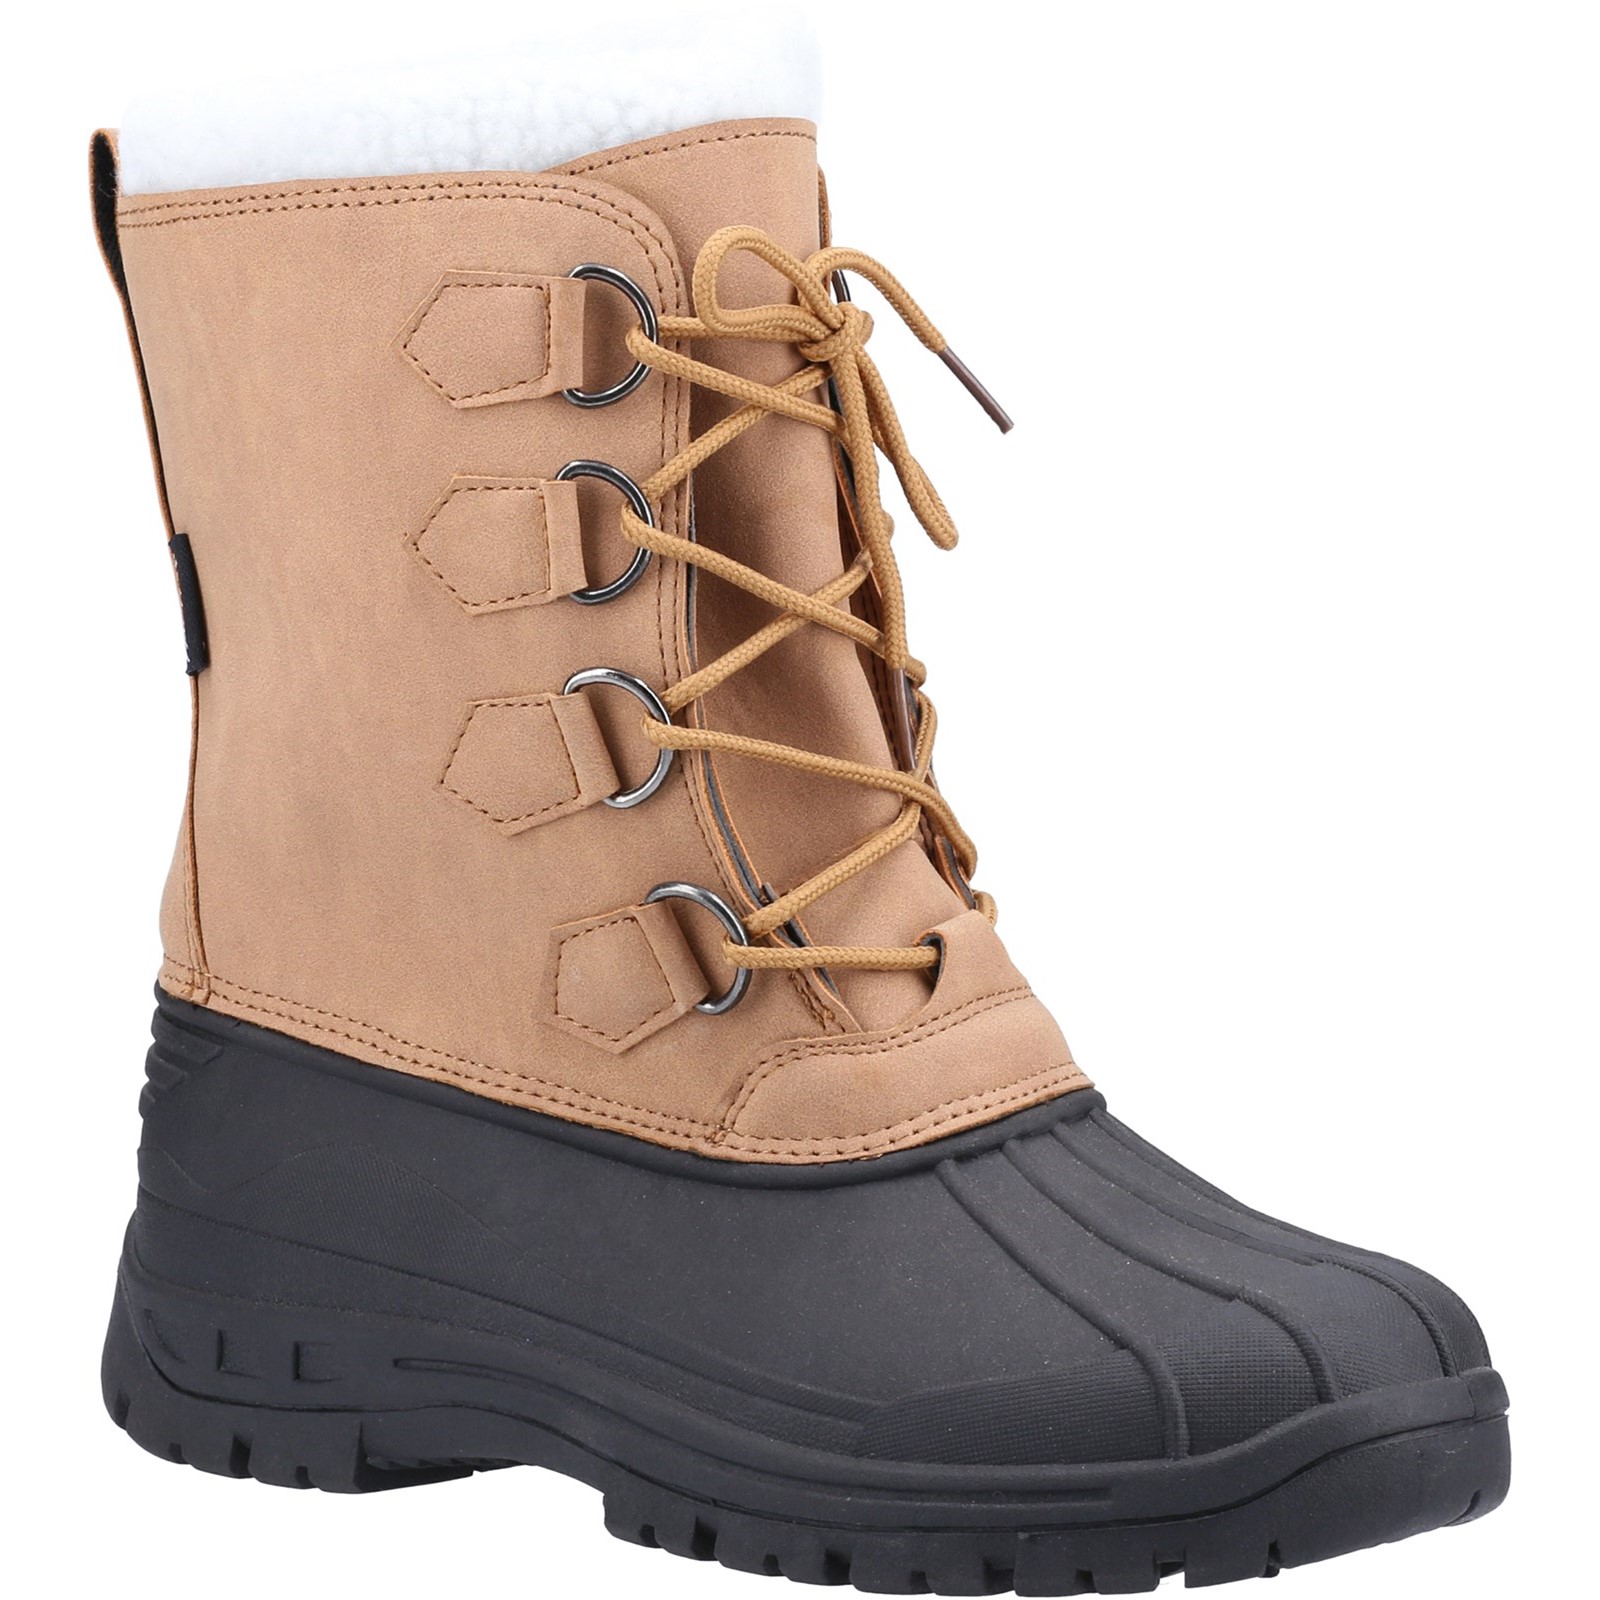 Snowfall Waterproof Winter Boot